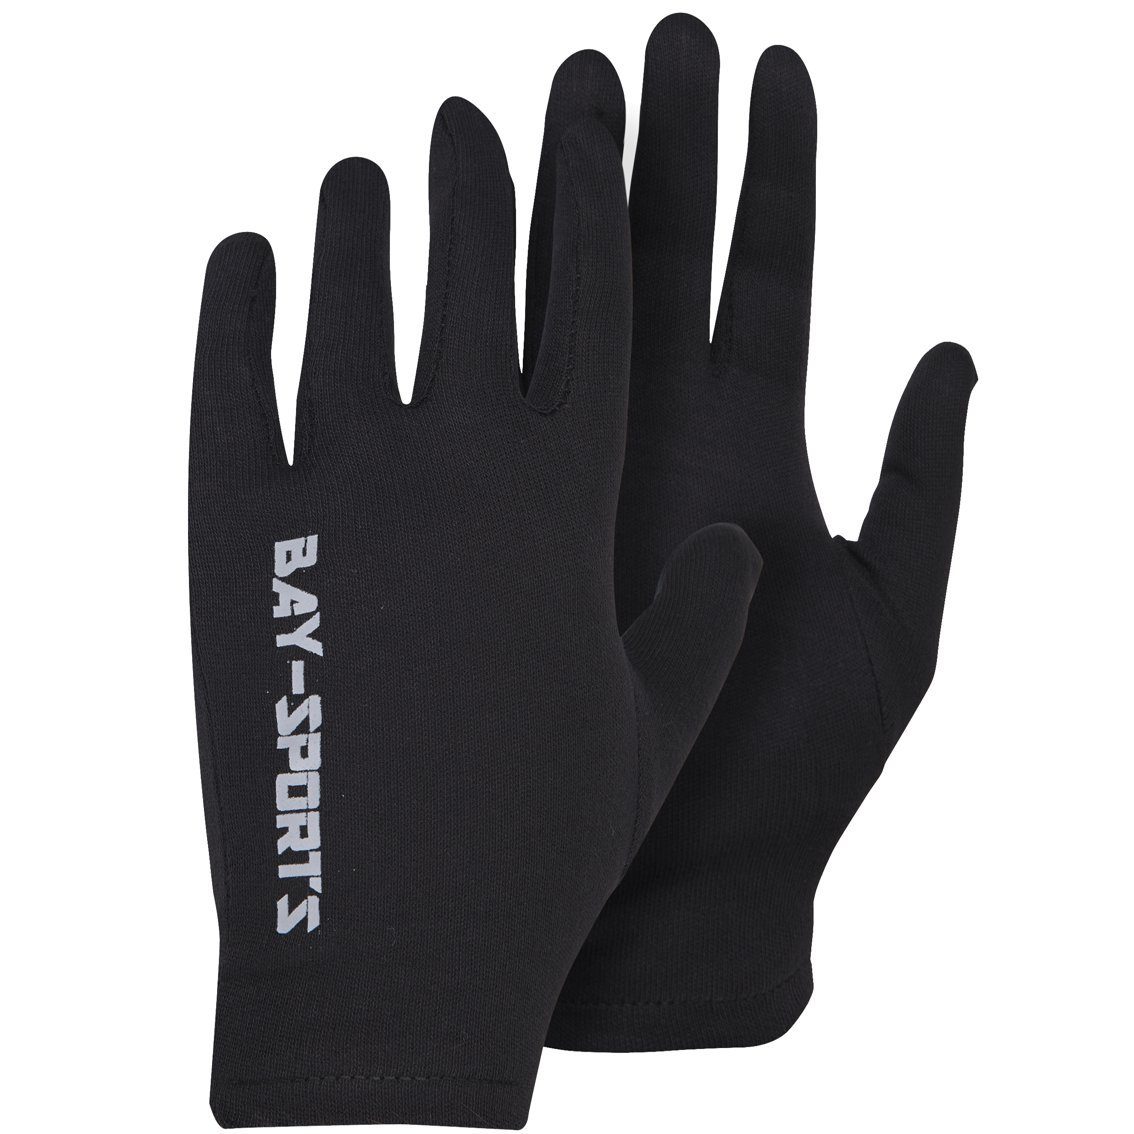 für BAY-Sports Box-Handschuhe Boxhandschuhe schwarz Handpratzen und Handschuhe Hygiene